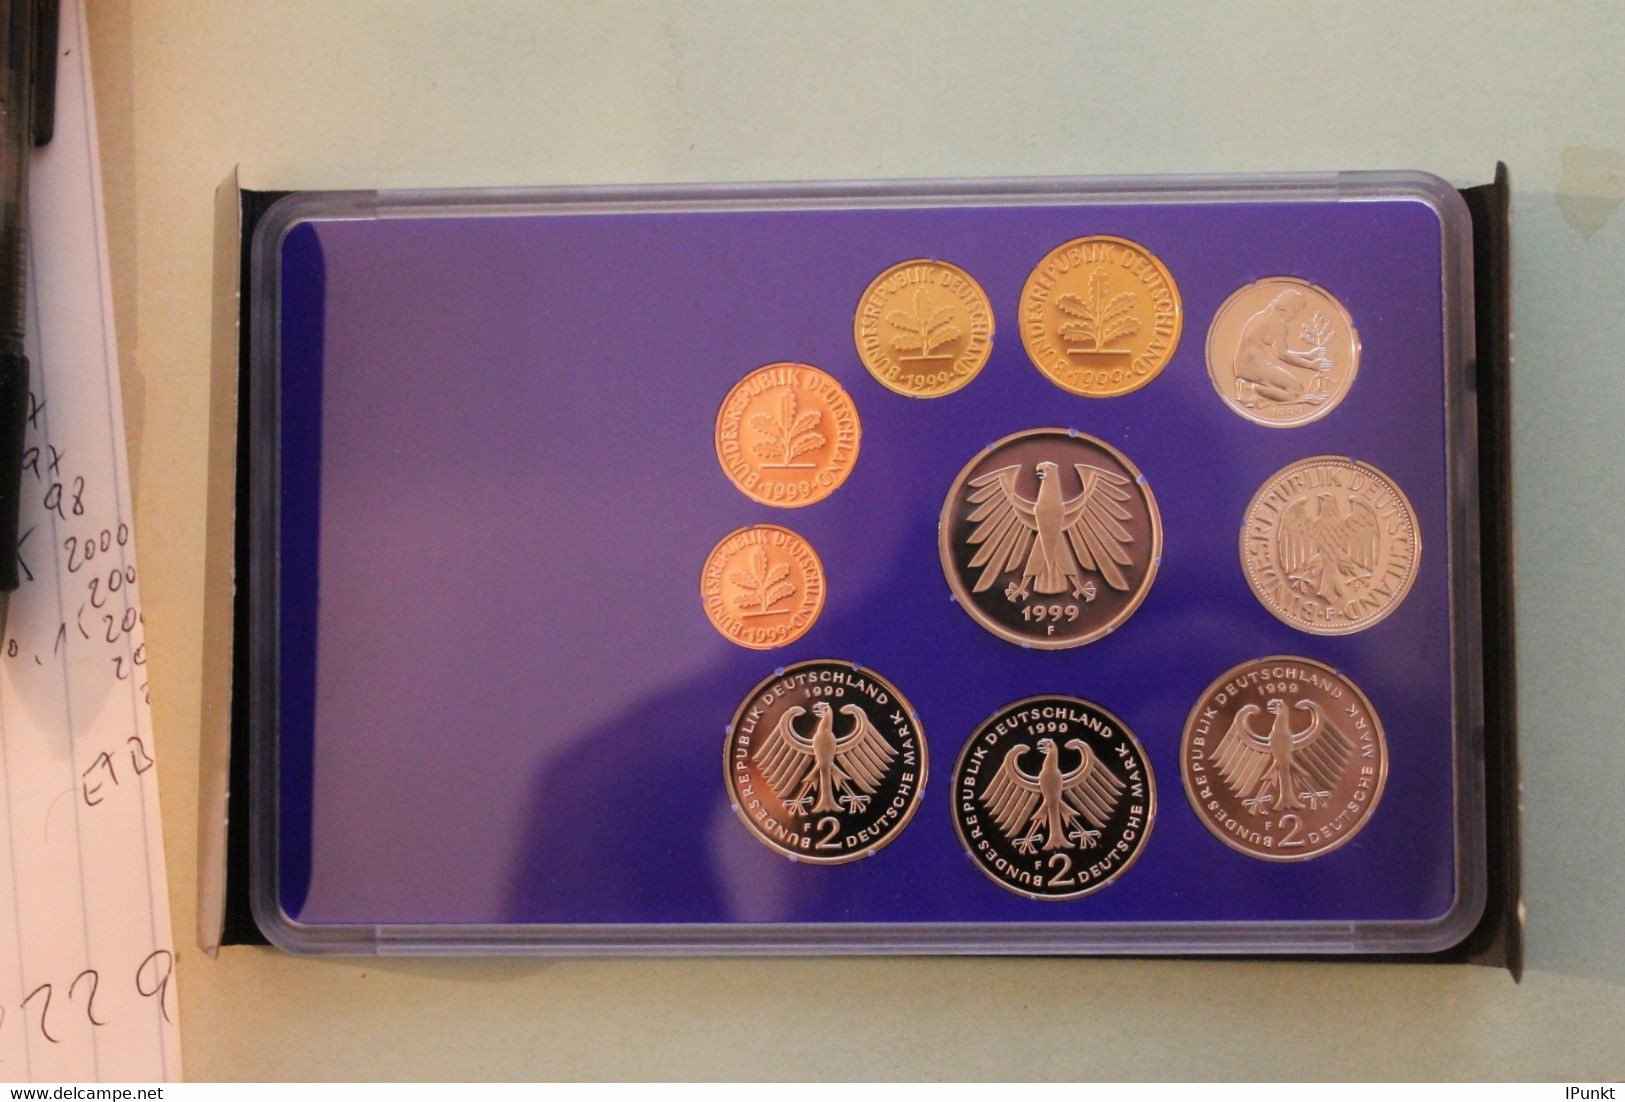 Deutschland, Kursmünzensatz; Umlaufmünzenserie 1999 F, Spiegelglanz (PP) - Mint Sets & Proof Sets